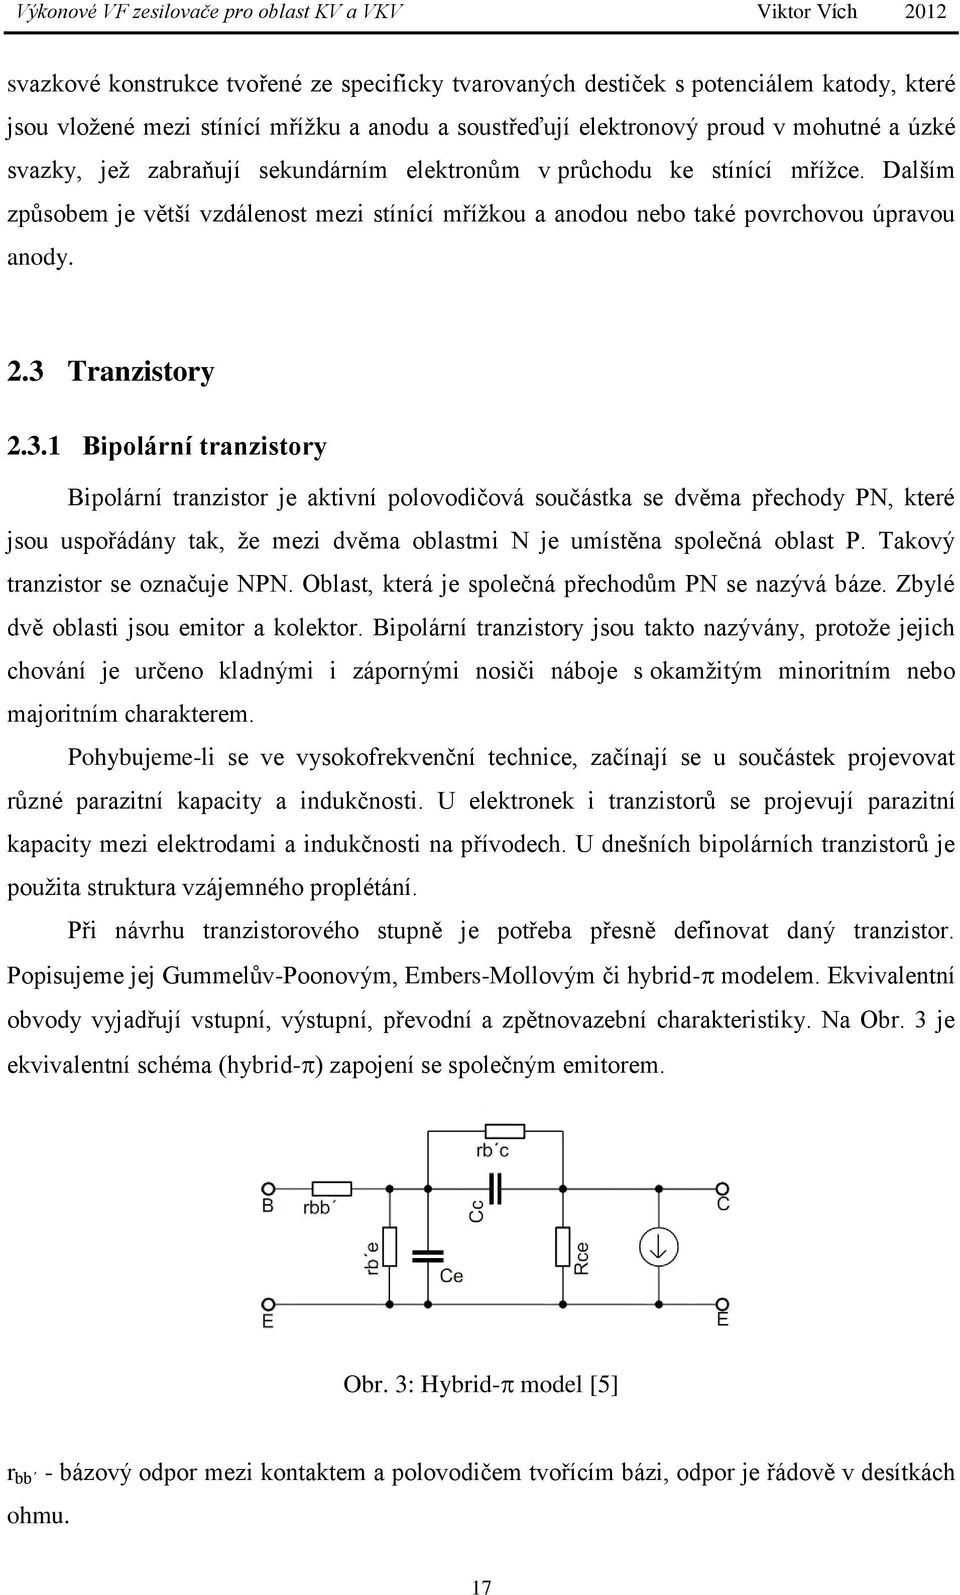 Tranzistory 2.3.1 Bipolární tranzistory Bipolární tranzistor je aktivní polovodičová součástka se dvěma přechody PN, které jsou uspořádány tak, že mezi dvěma oblastmi N je umístěna společná oblast P.